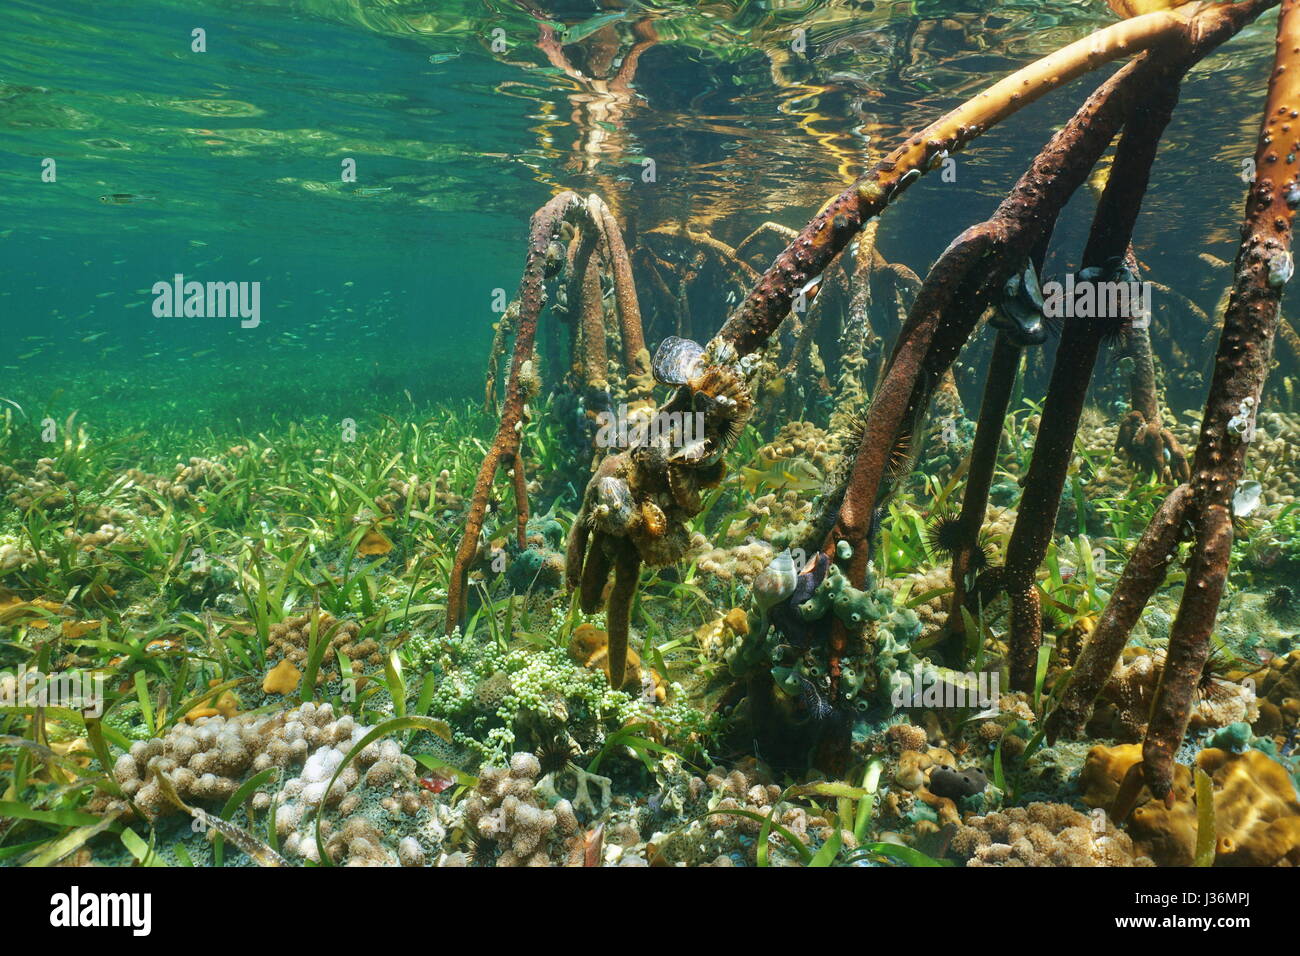 Las raíces del mangle subacuático con la vida marina del océano Atlántico, Bahamas Foto de stock